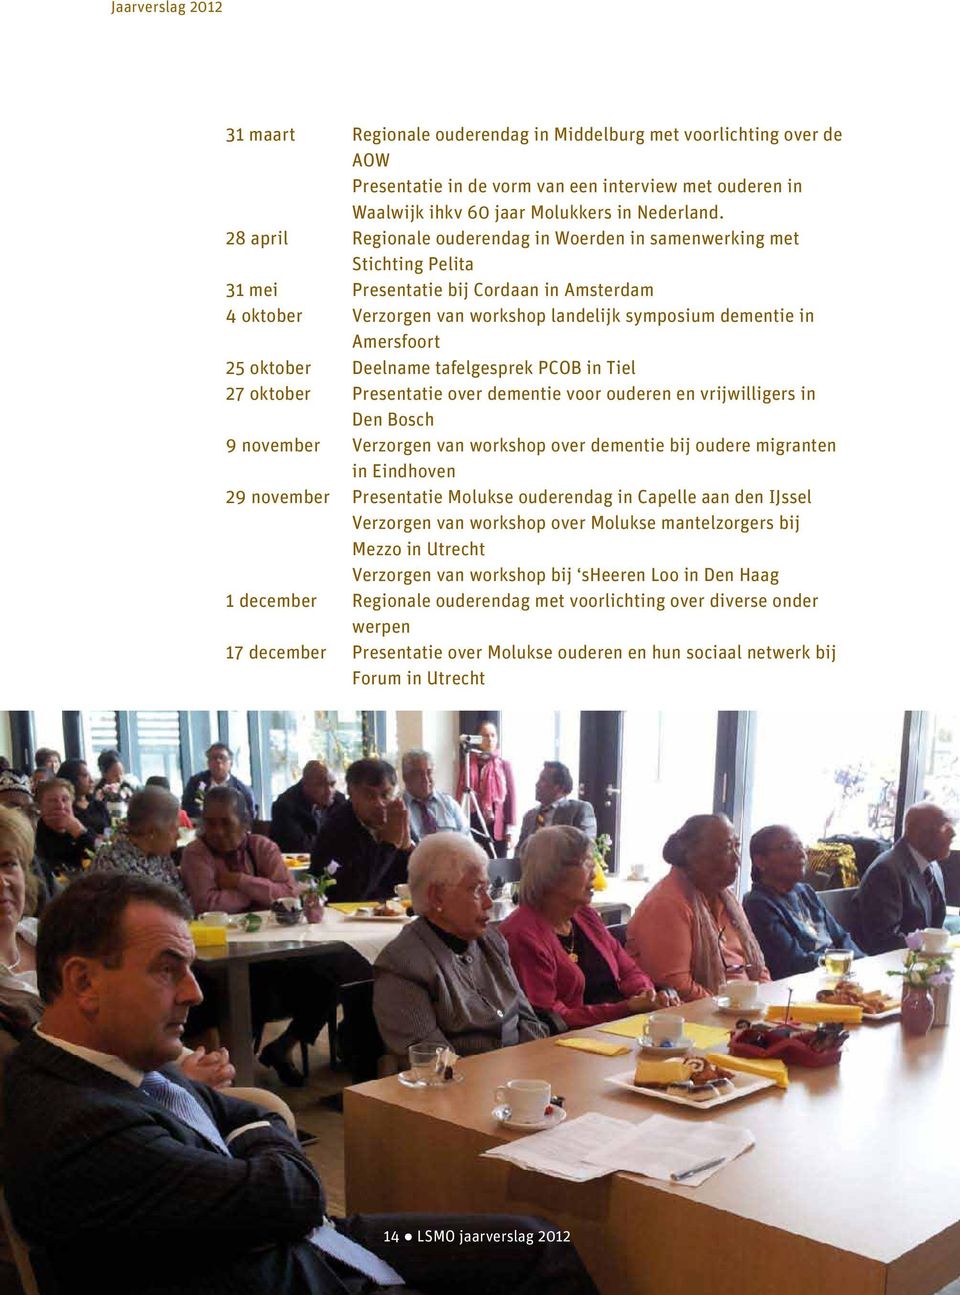 25 oktober Deelname tafelgesprek PCOB in Tiel 27 oktober Presentatie over dementie voor ouderen en vrijwilligers in Den Bosch 9 november Verzorgen van workshop over dementie bij oudere migranten in